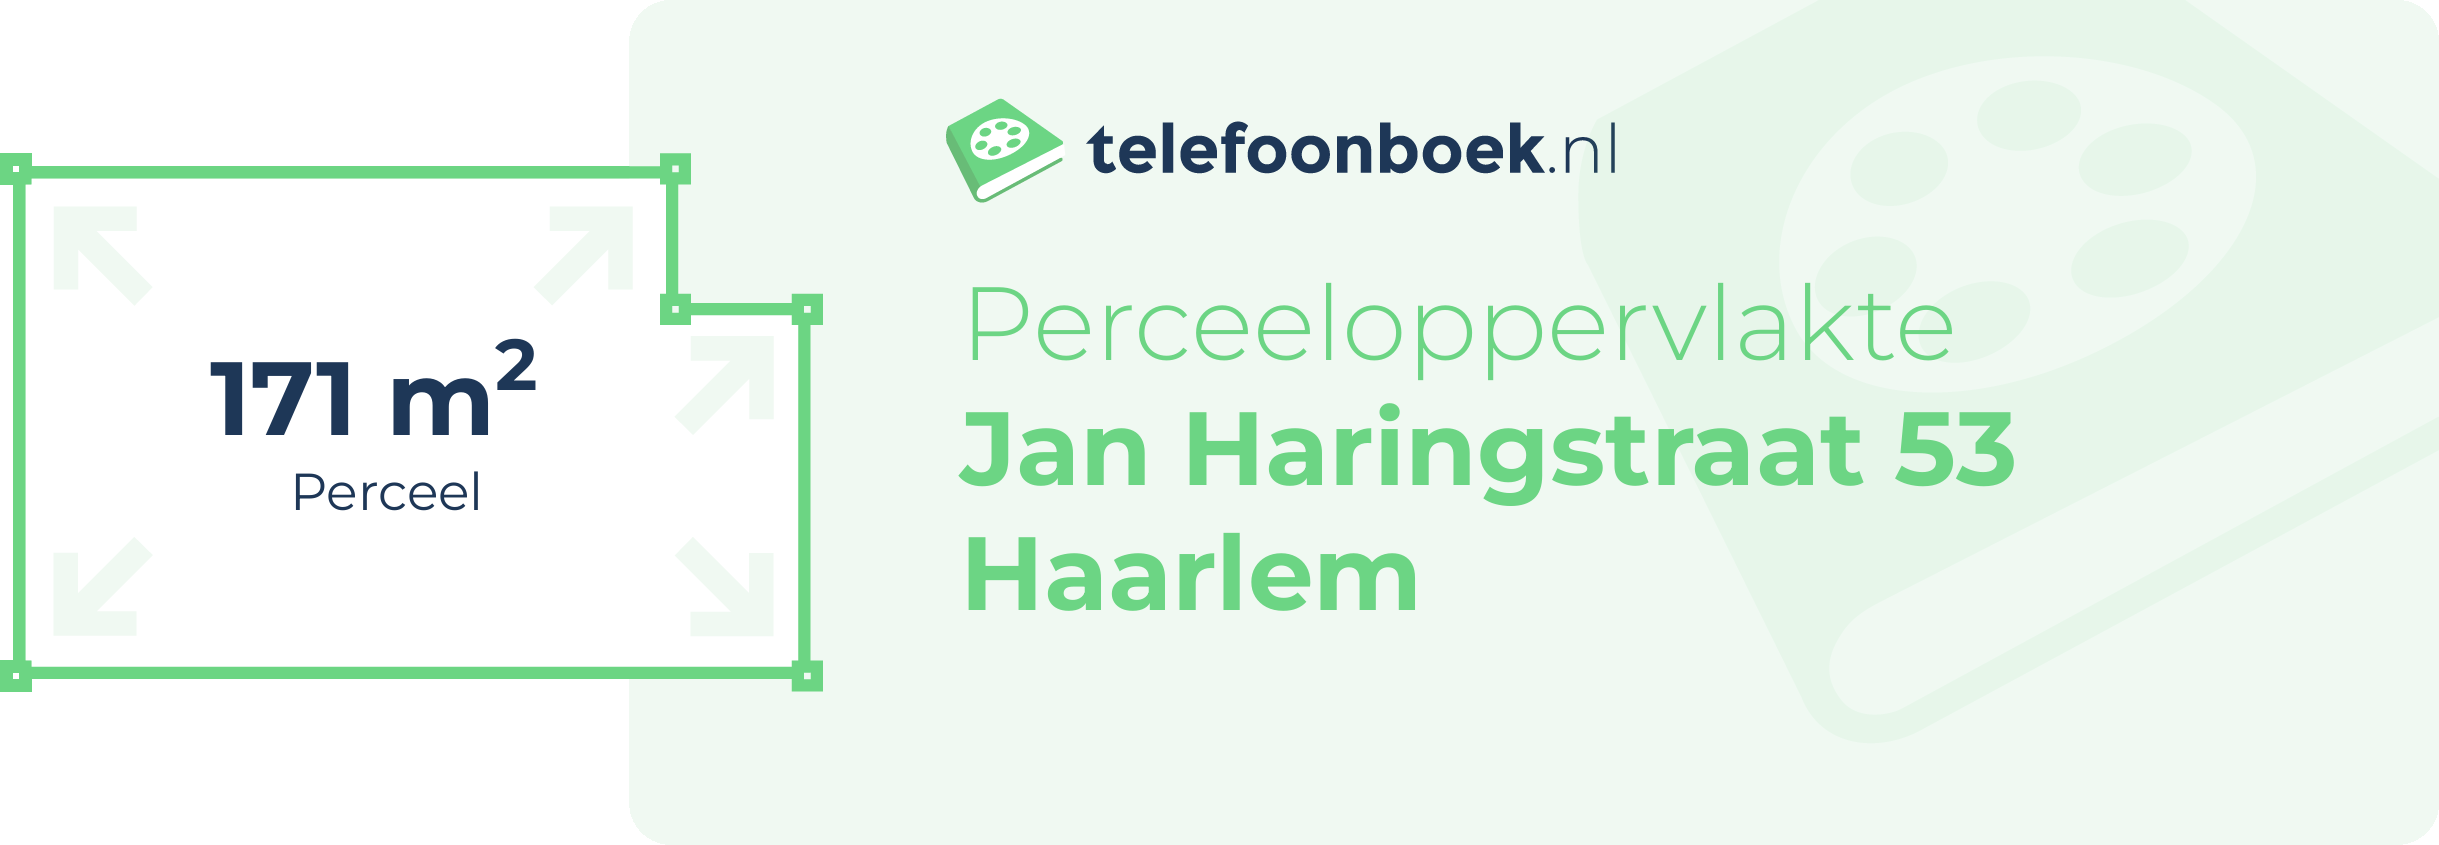 Perceeloppervlakte Jan Haringstraat 53 Haarlem